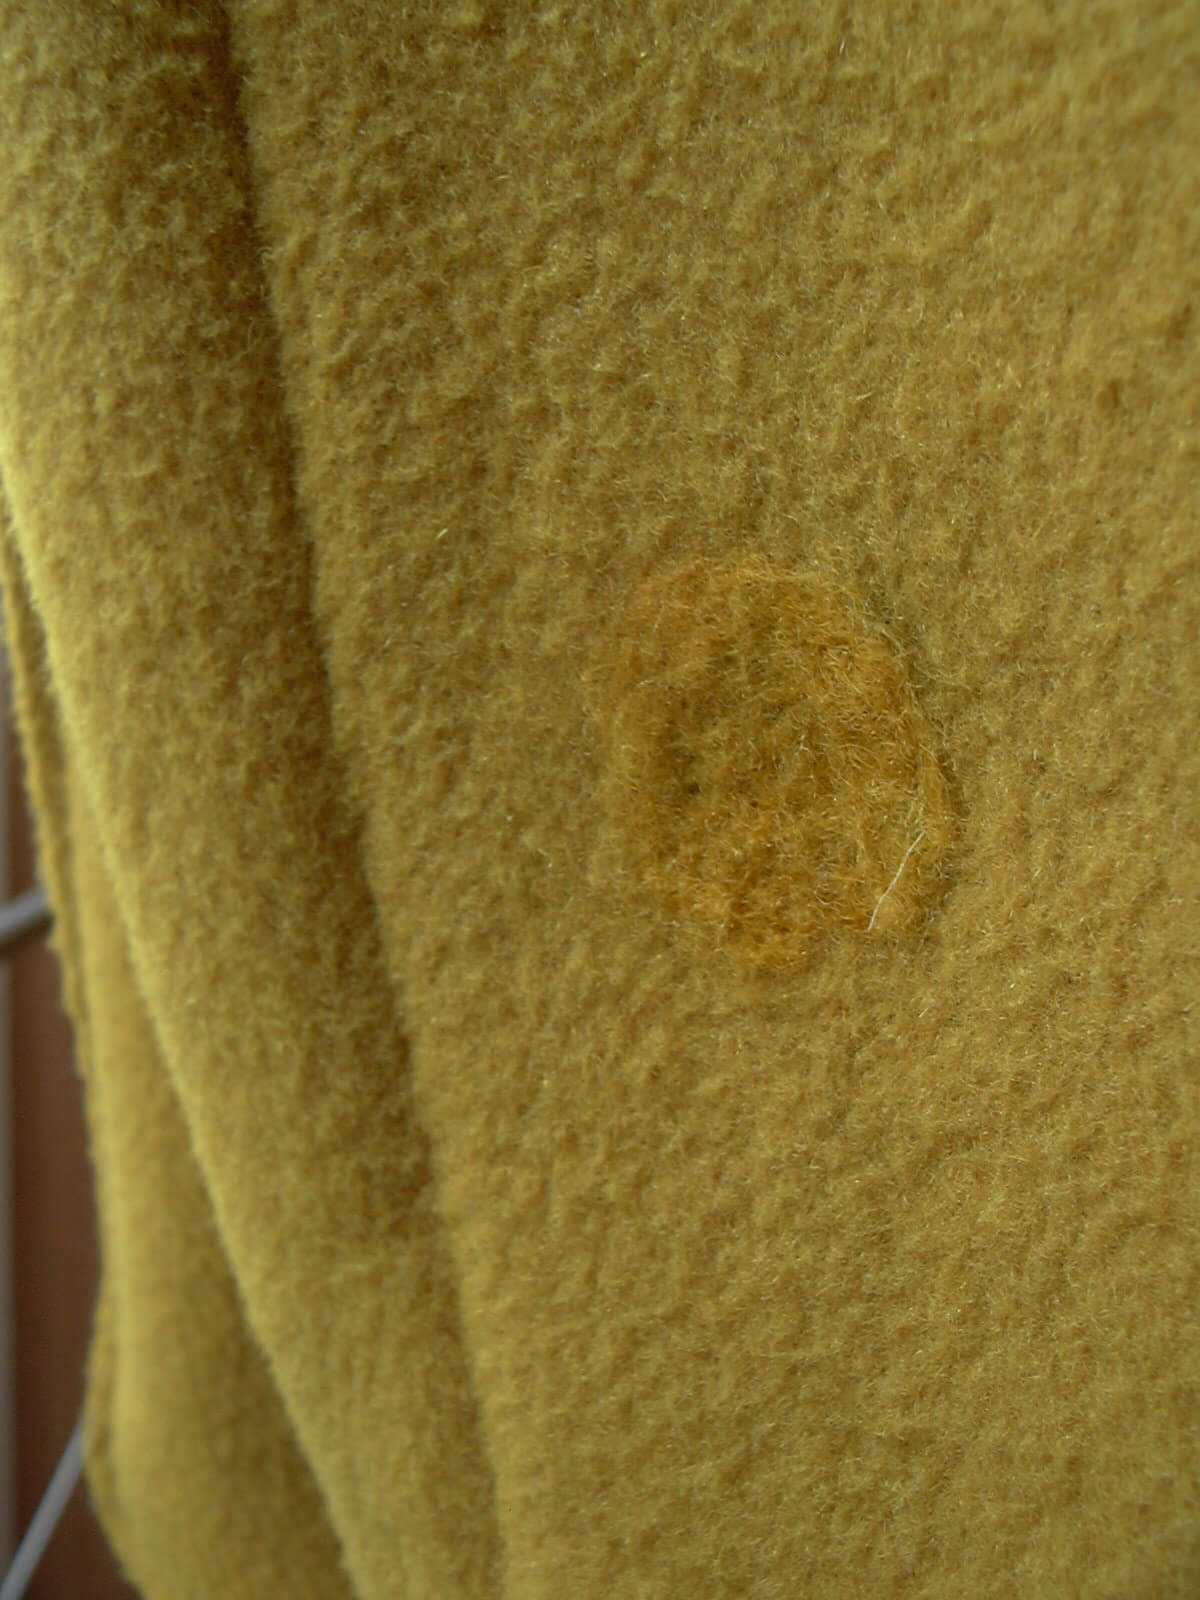 自電車で転びコートの右袖を引っ掛けて穴が空いてしまったので羊毛のニードルパンチ修繕